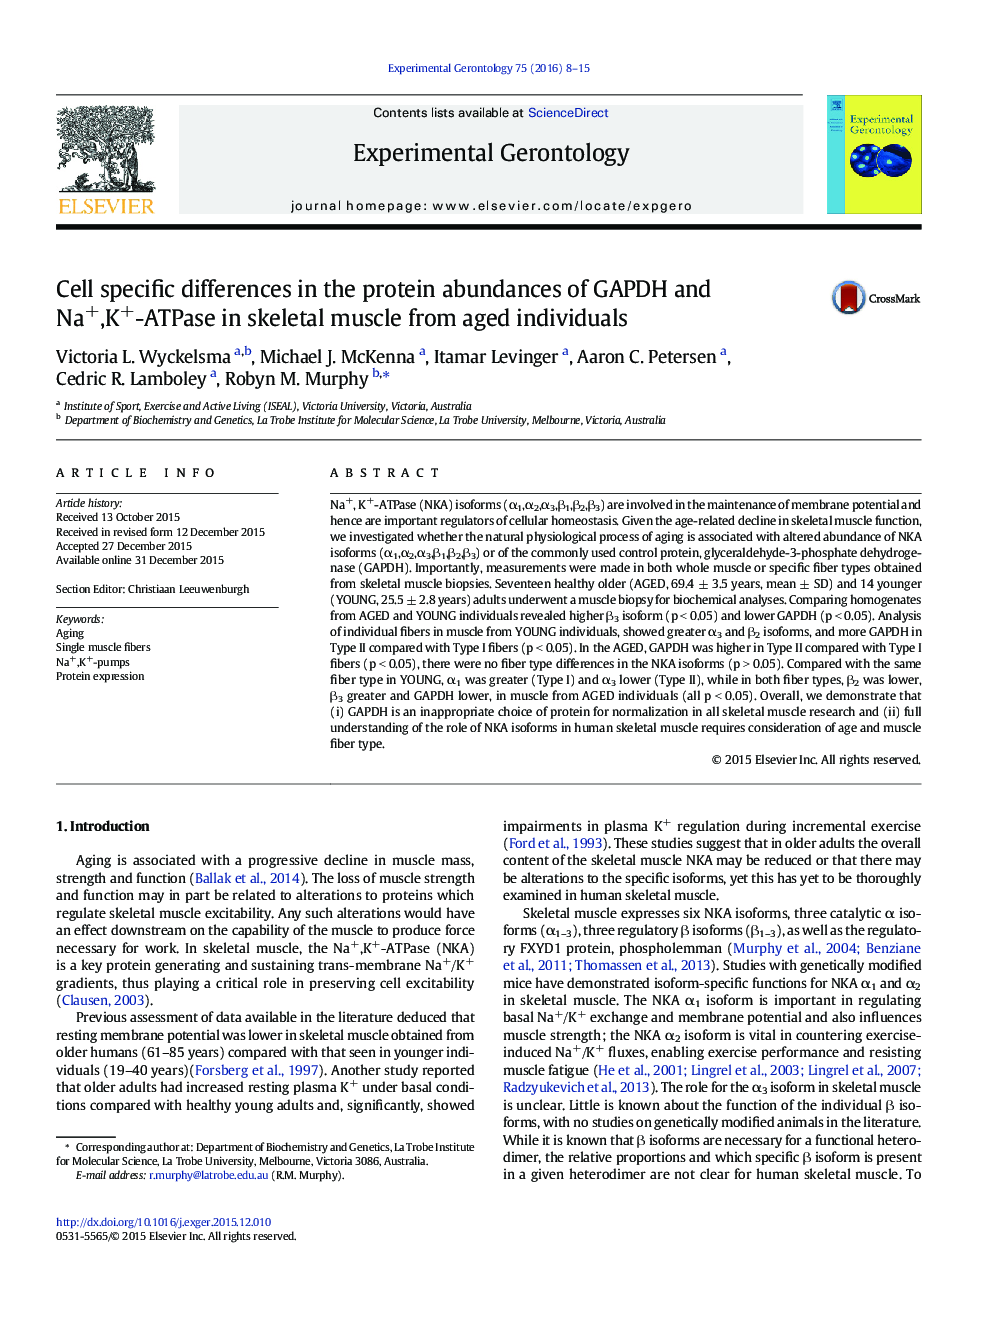 تفاوت های خاص سلولی در فراوانی پروتئین GAPDH و Na +، K + -ATPase در عضلات اسکلتی از افراد سالمند